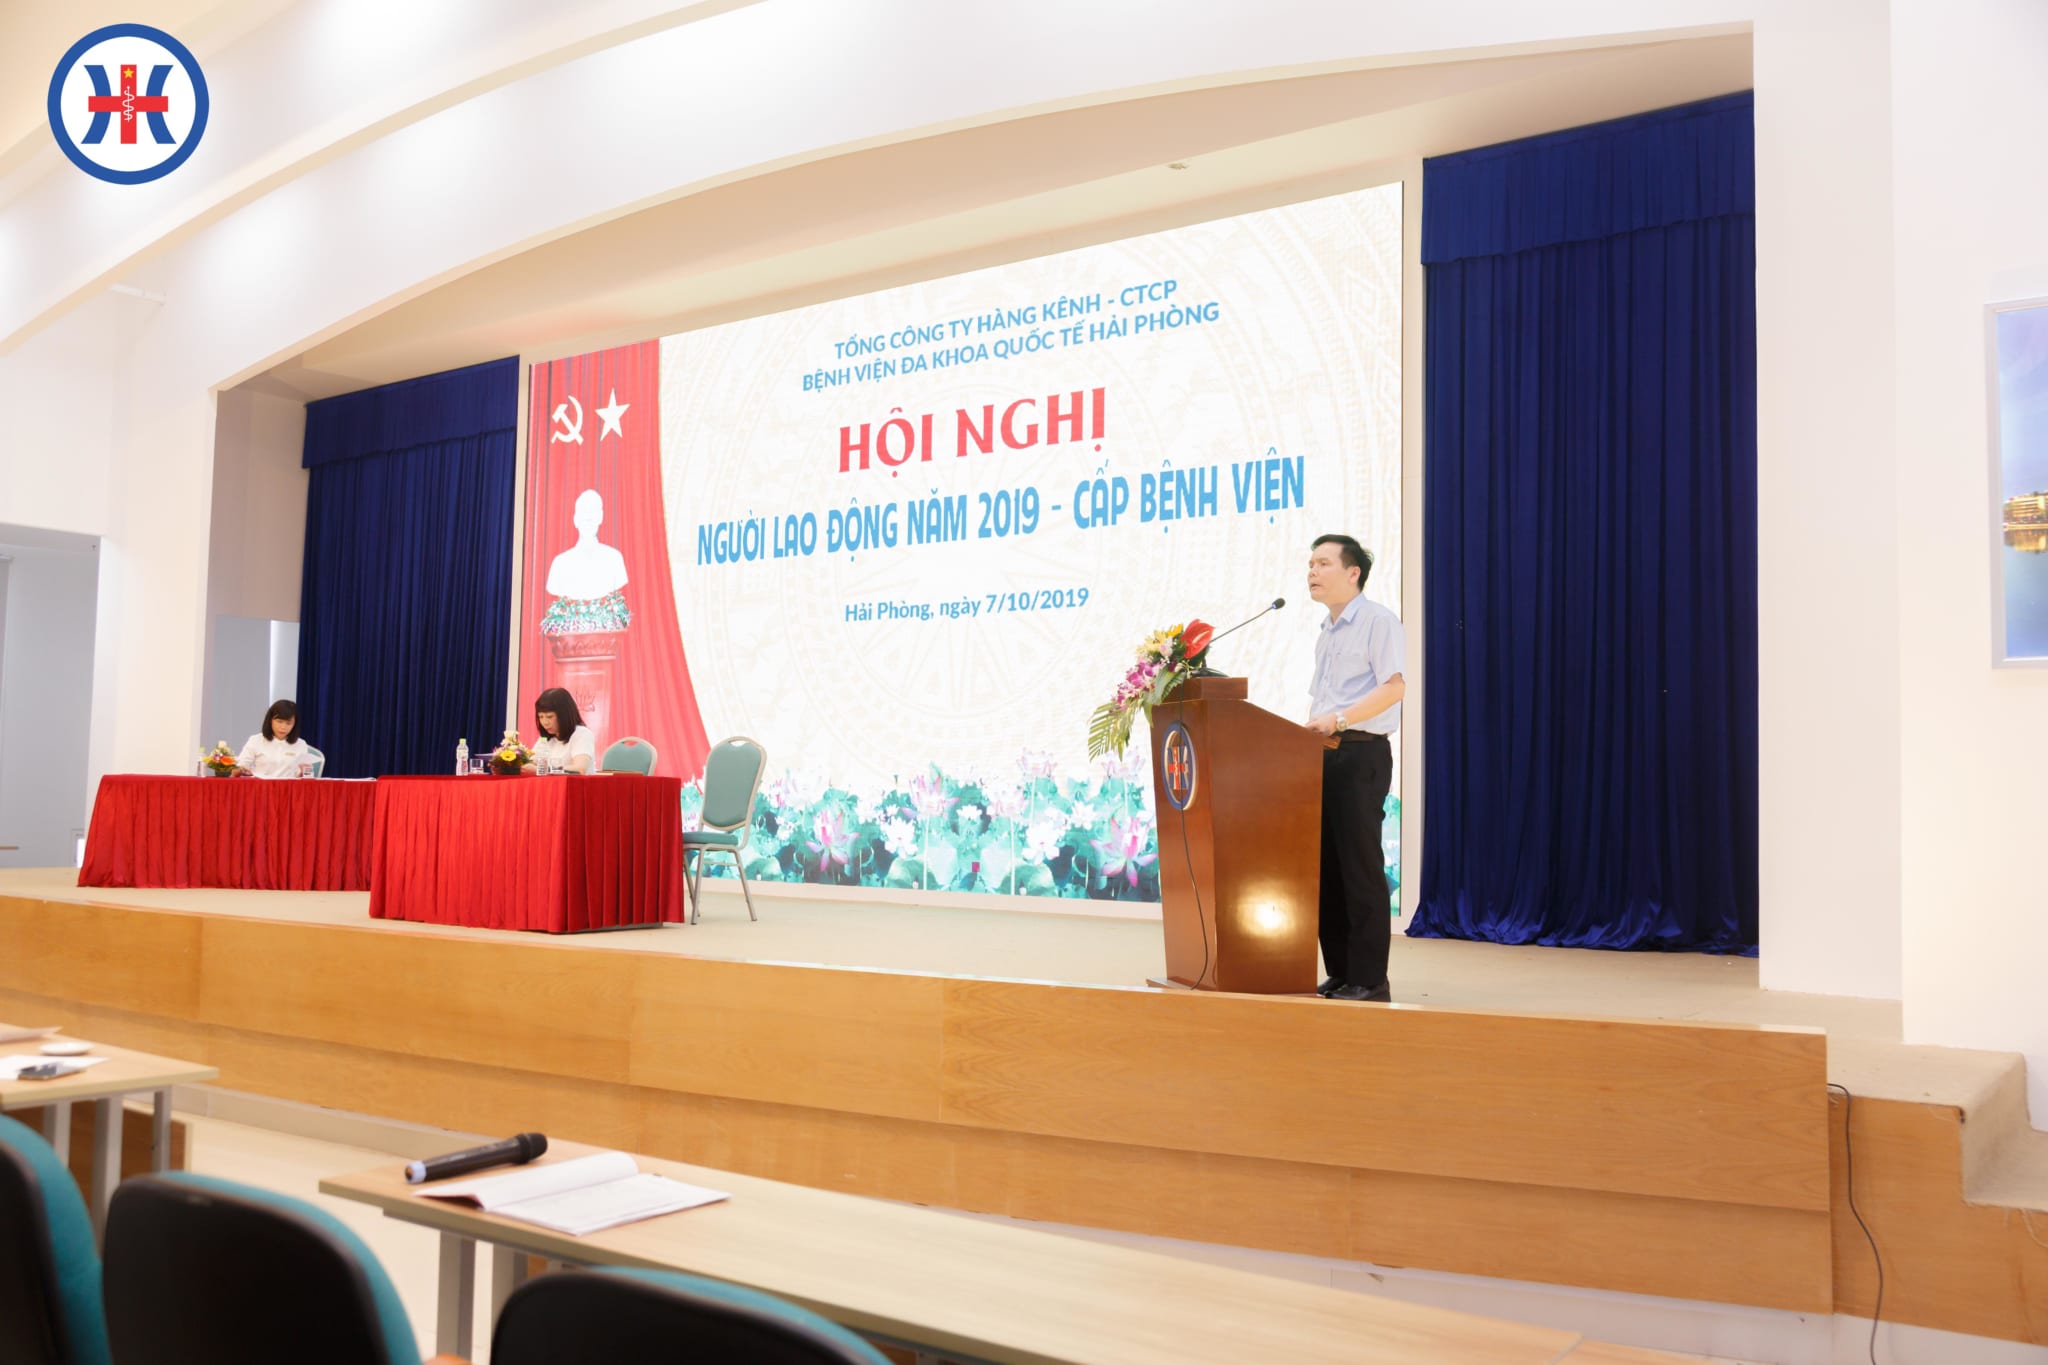 PGS.TS Nguyễn Thanh Hồi - Giám đốc điều hành Bệnh viện đã trực tiếp giải đáp các ý kiến thắc mắc liên quan đến hoạt động chuyên môn của đơn vị, về quyền lợi ích, nghĩa vụ và trách nhiệm của cán bộ công nhân viên bệnh viện.